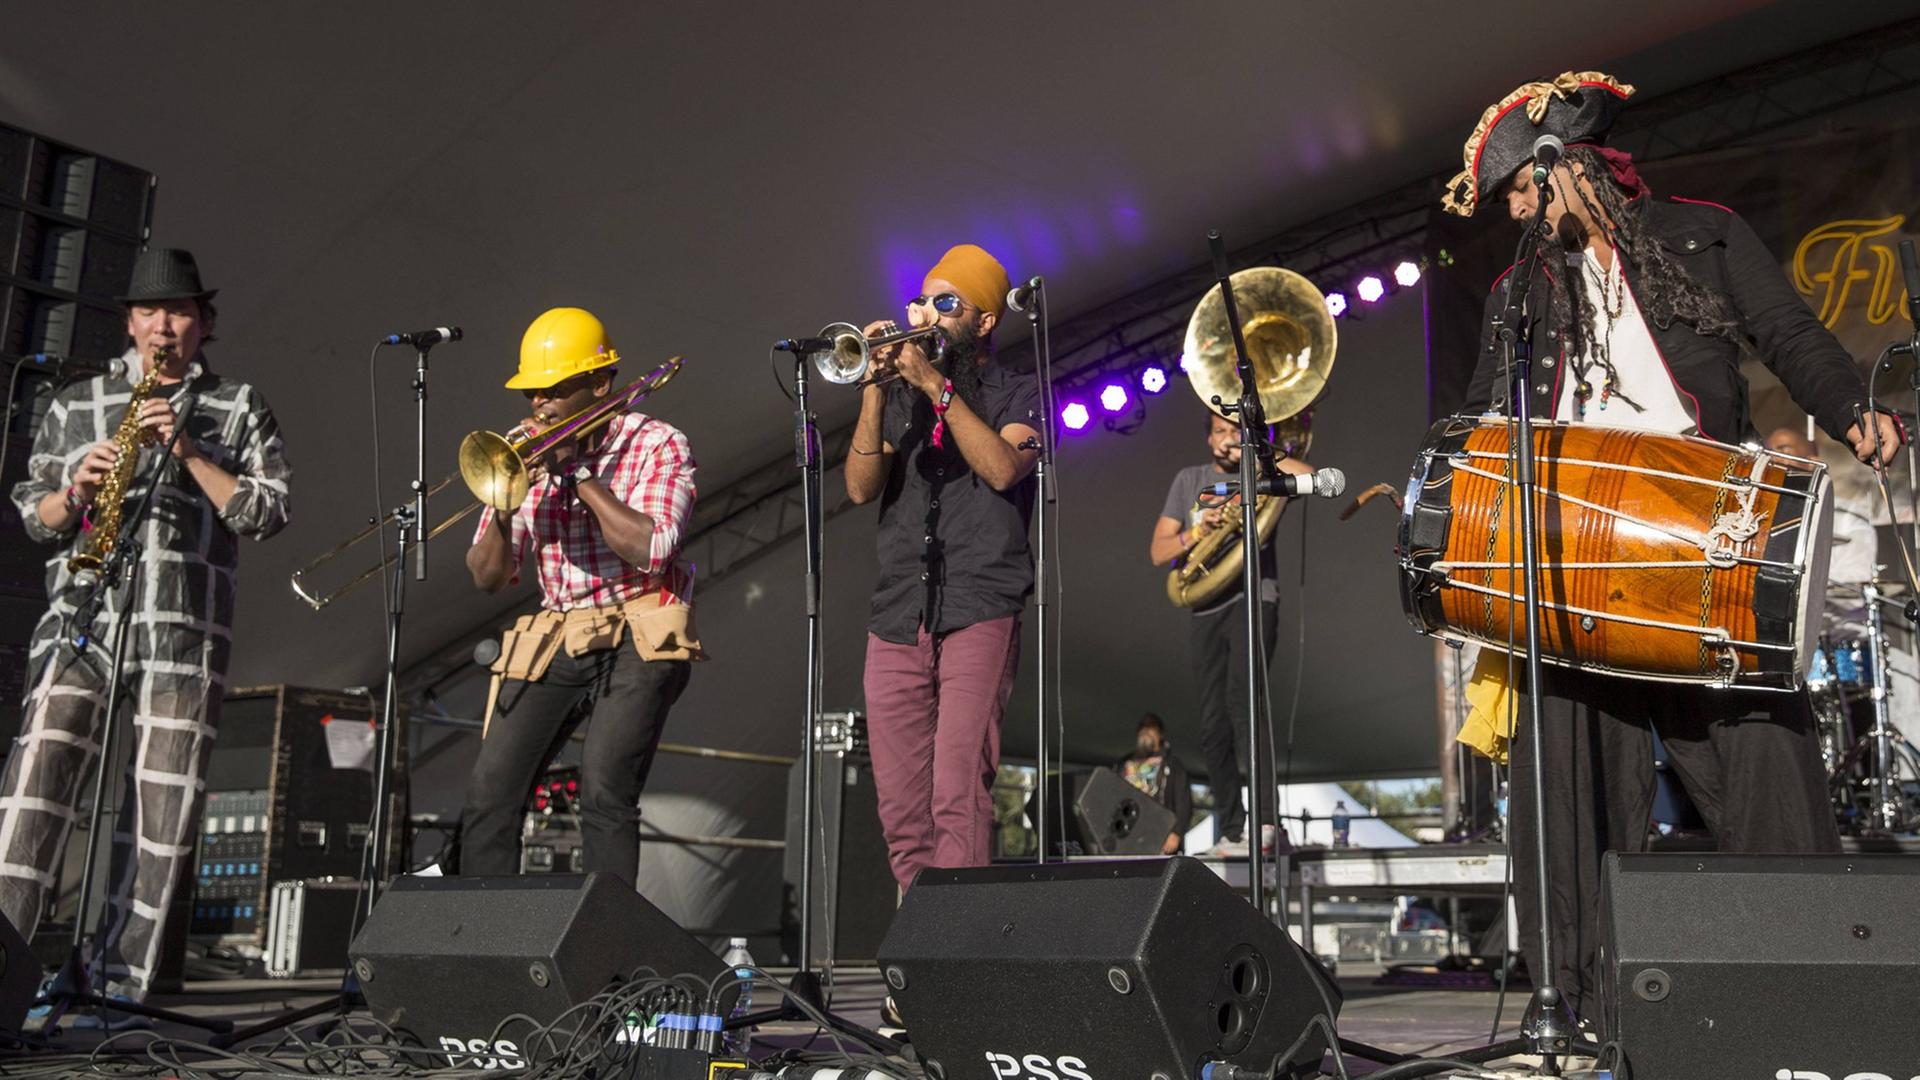 Die Band "Red Baraat" 2014 auf einem Konzert in New Orleans.